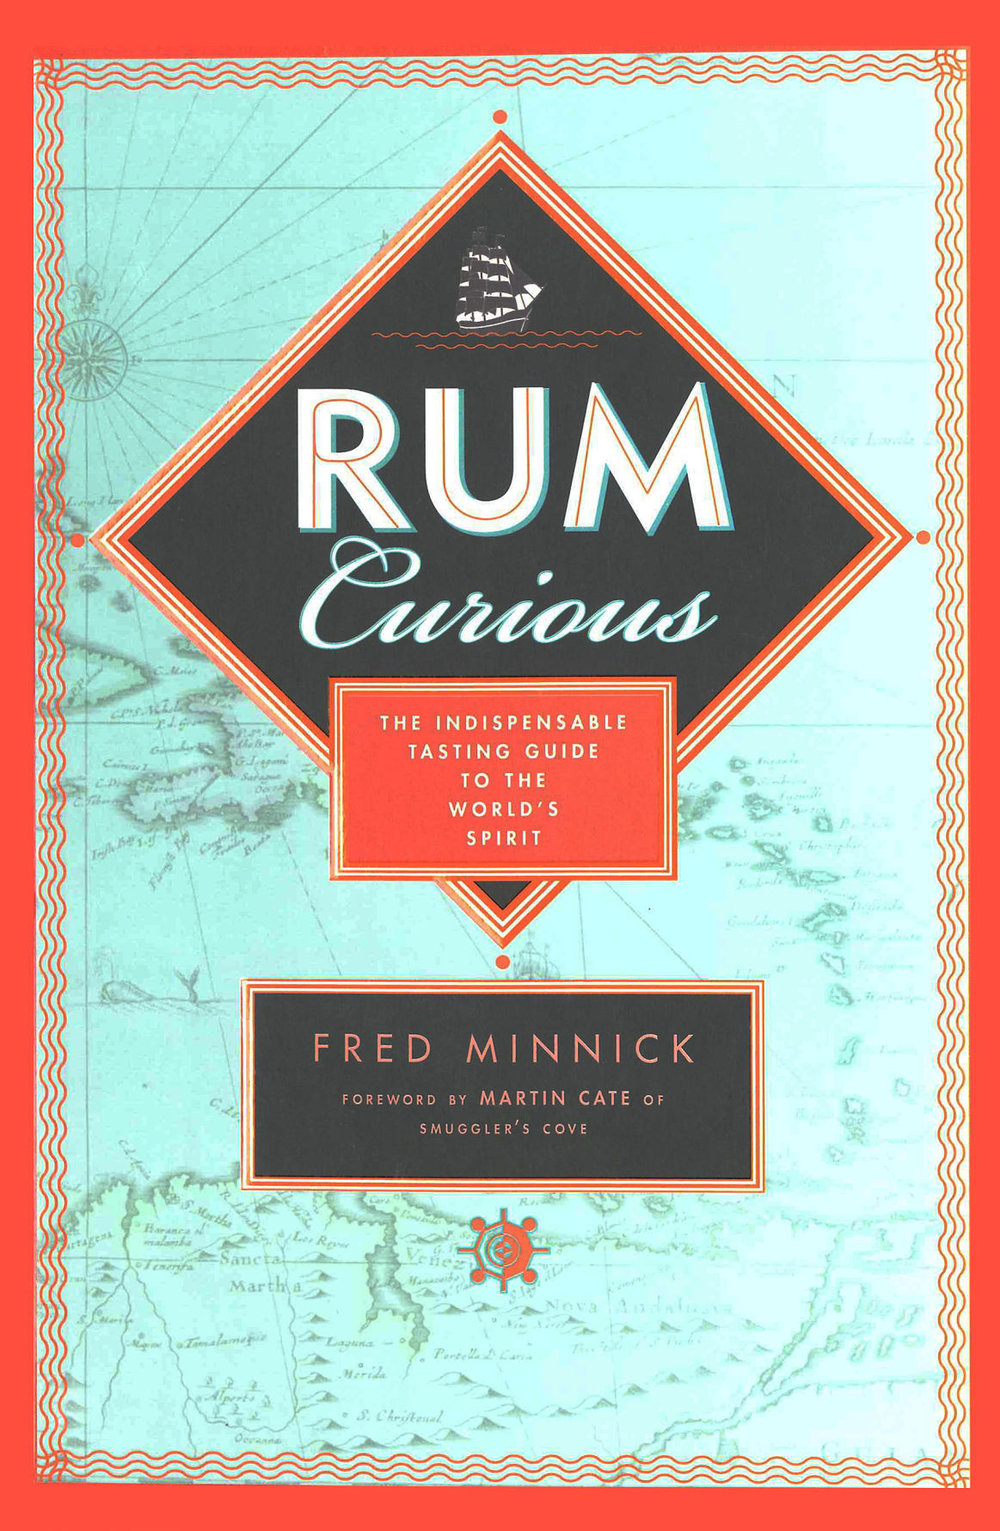 Rum Currious.jpg